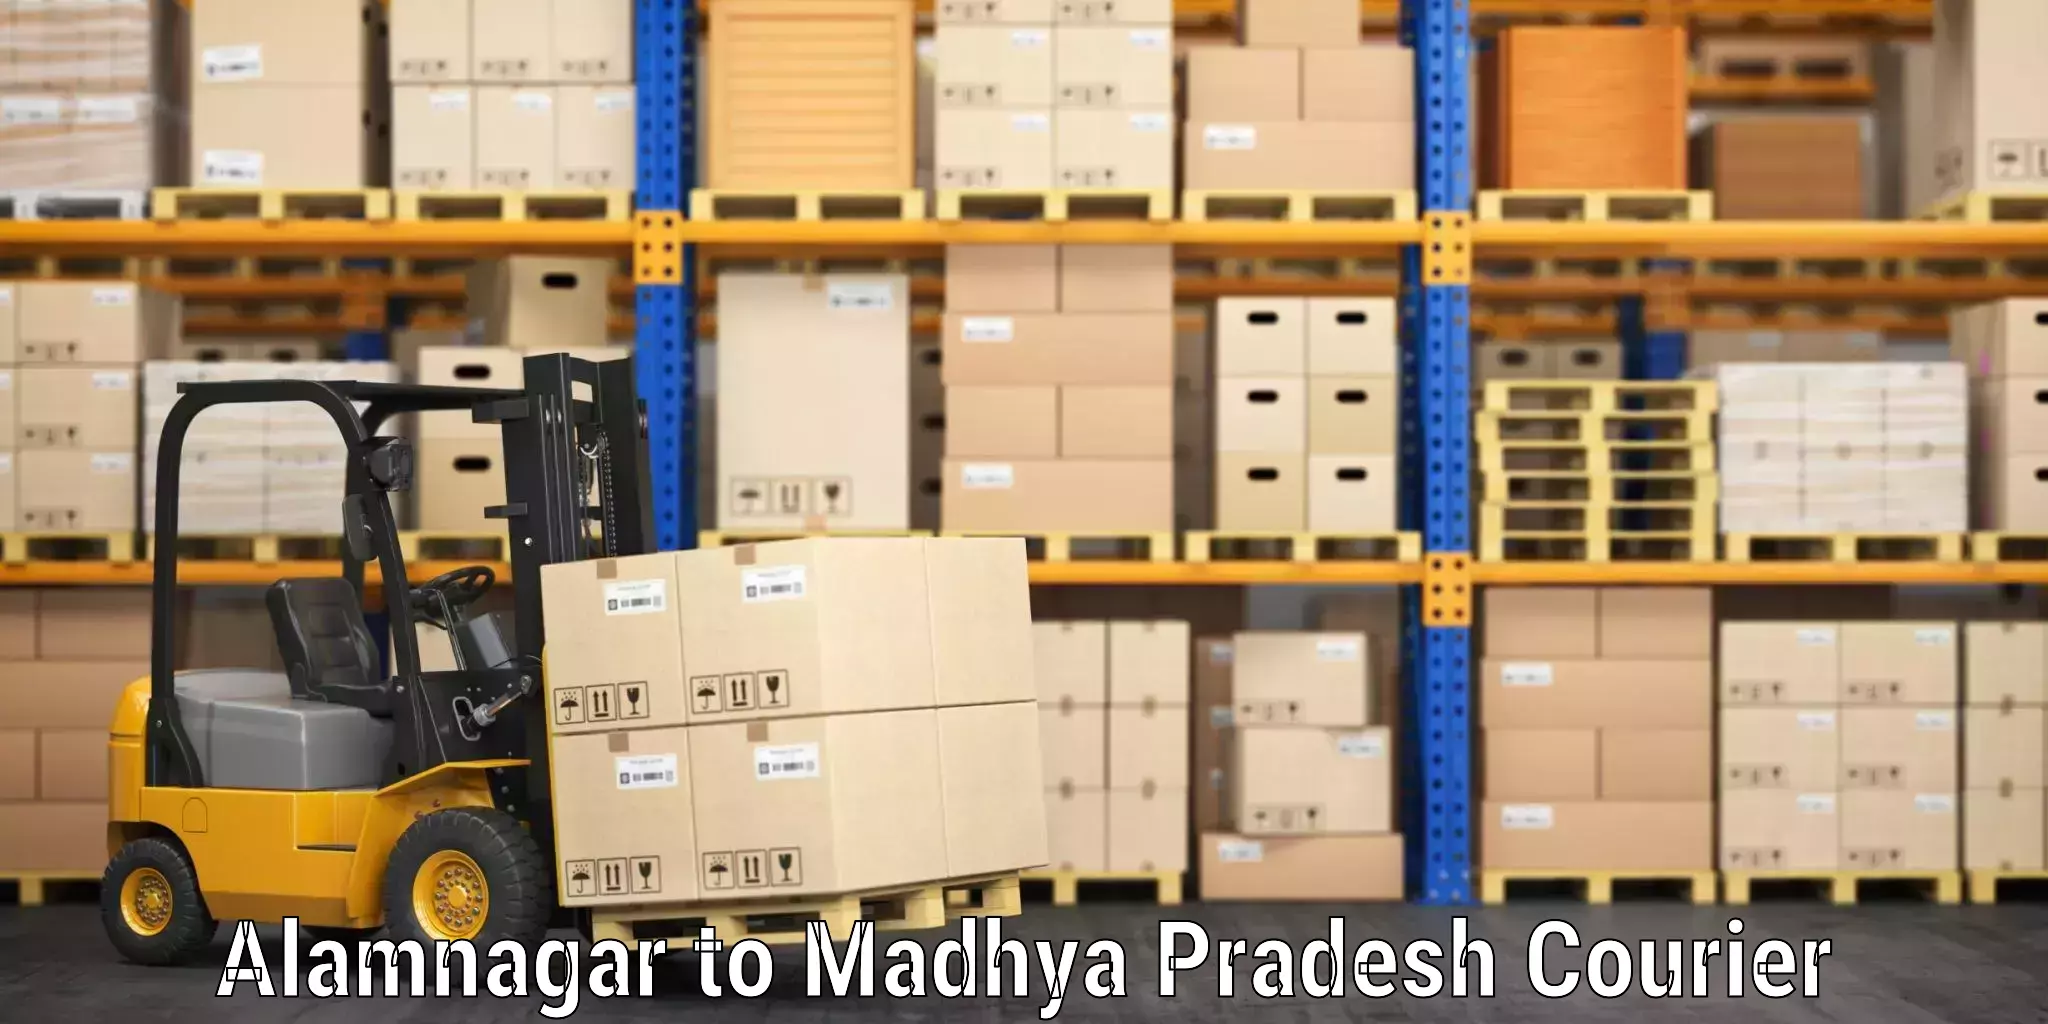 Baggage courier logistics Alamnagar to Rahatgarh